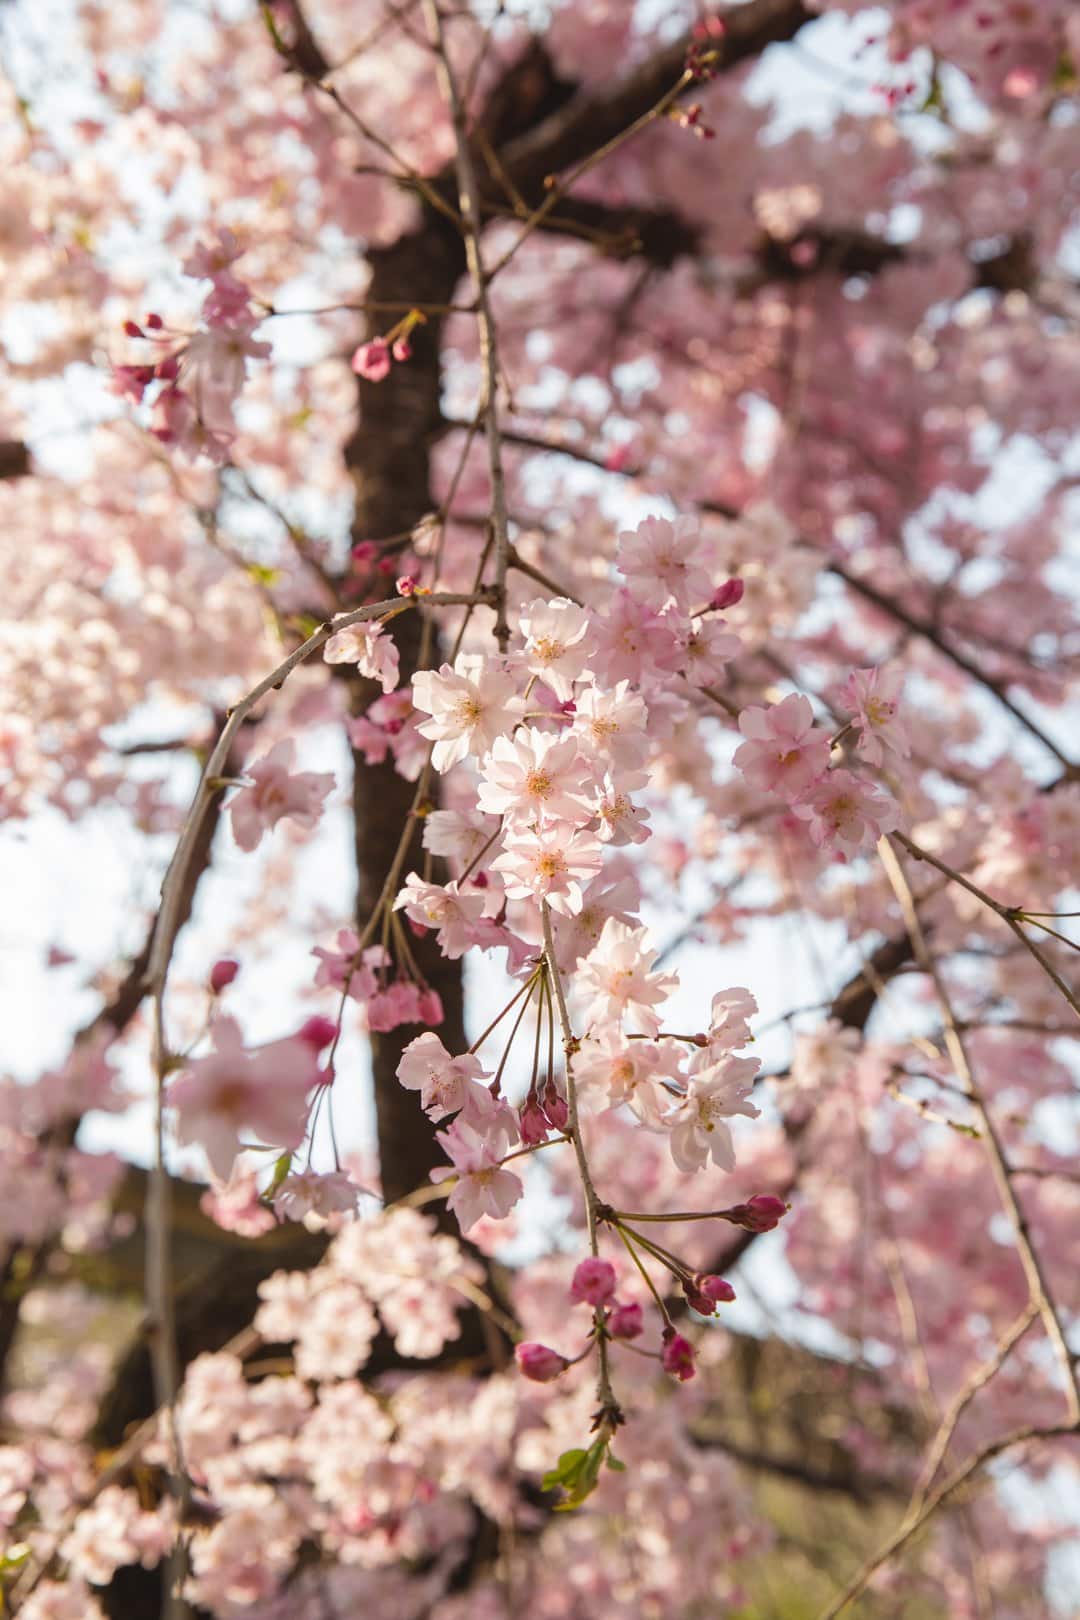 Green Tea Sakura Blossom